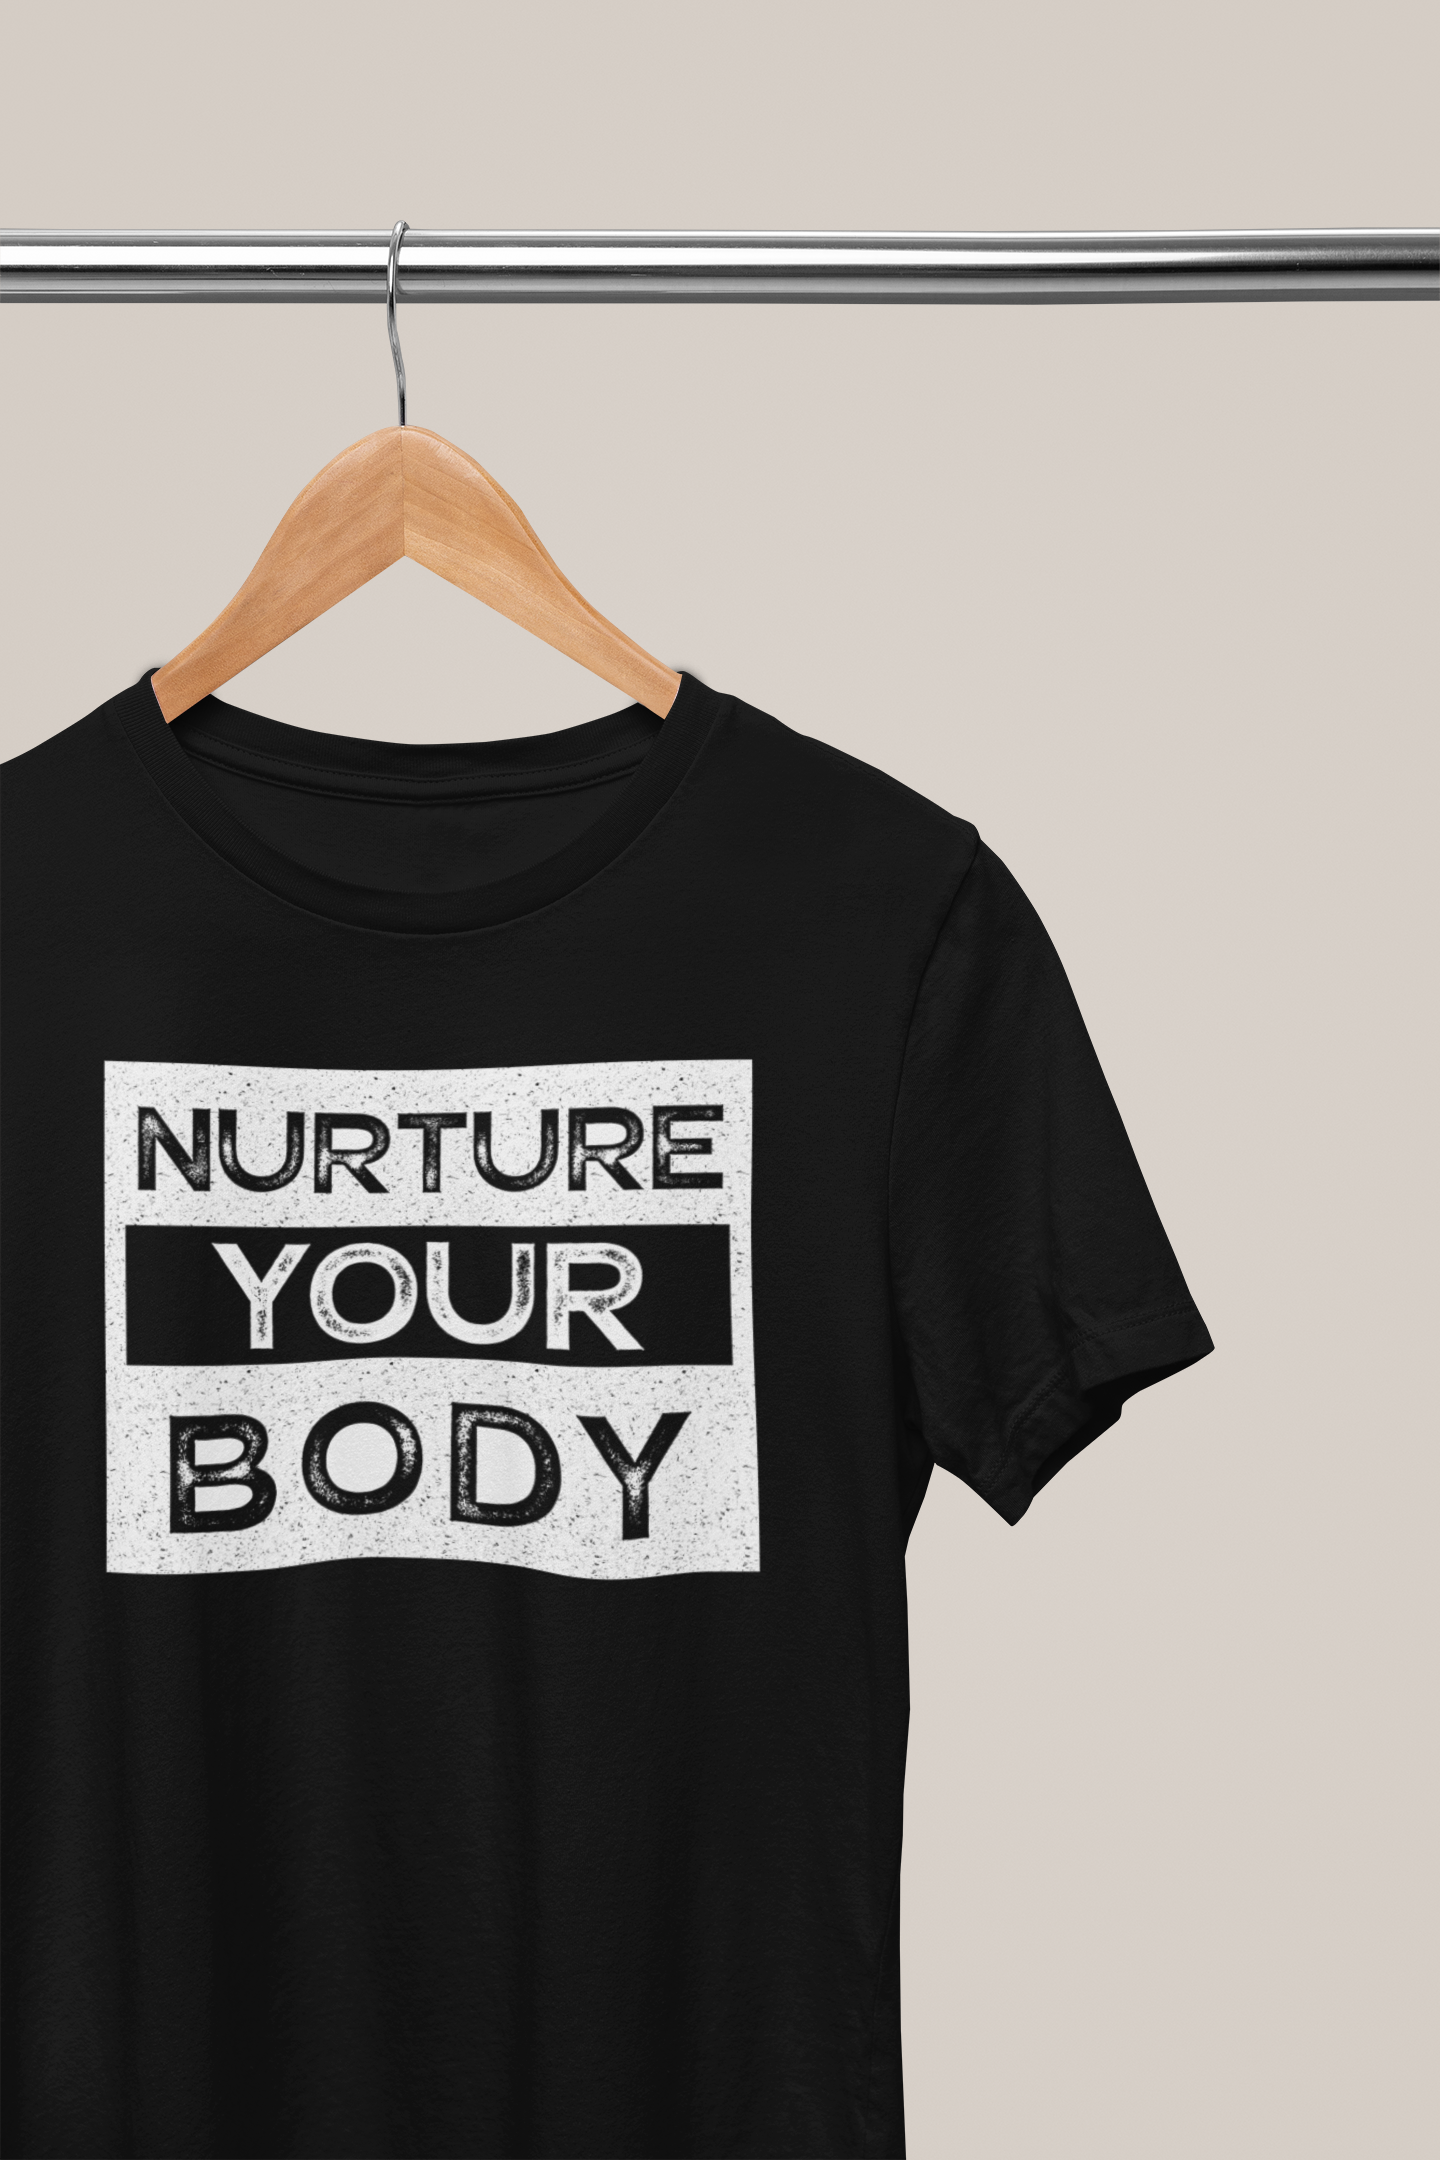 Nurture Your Body